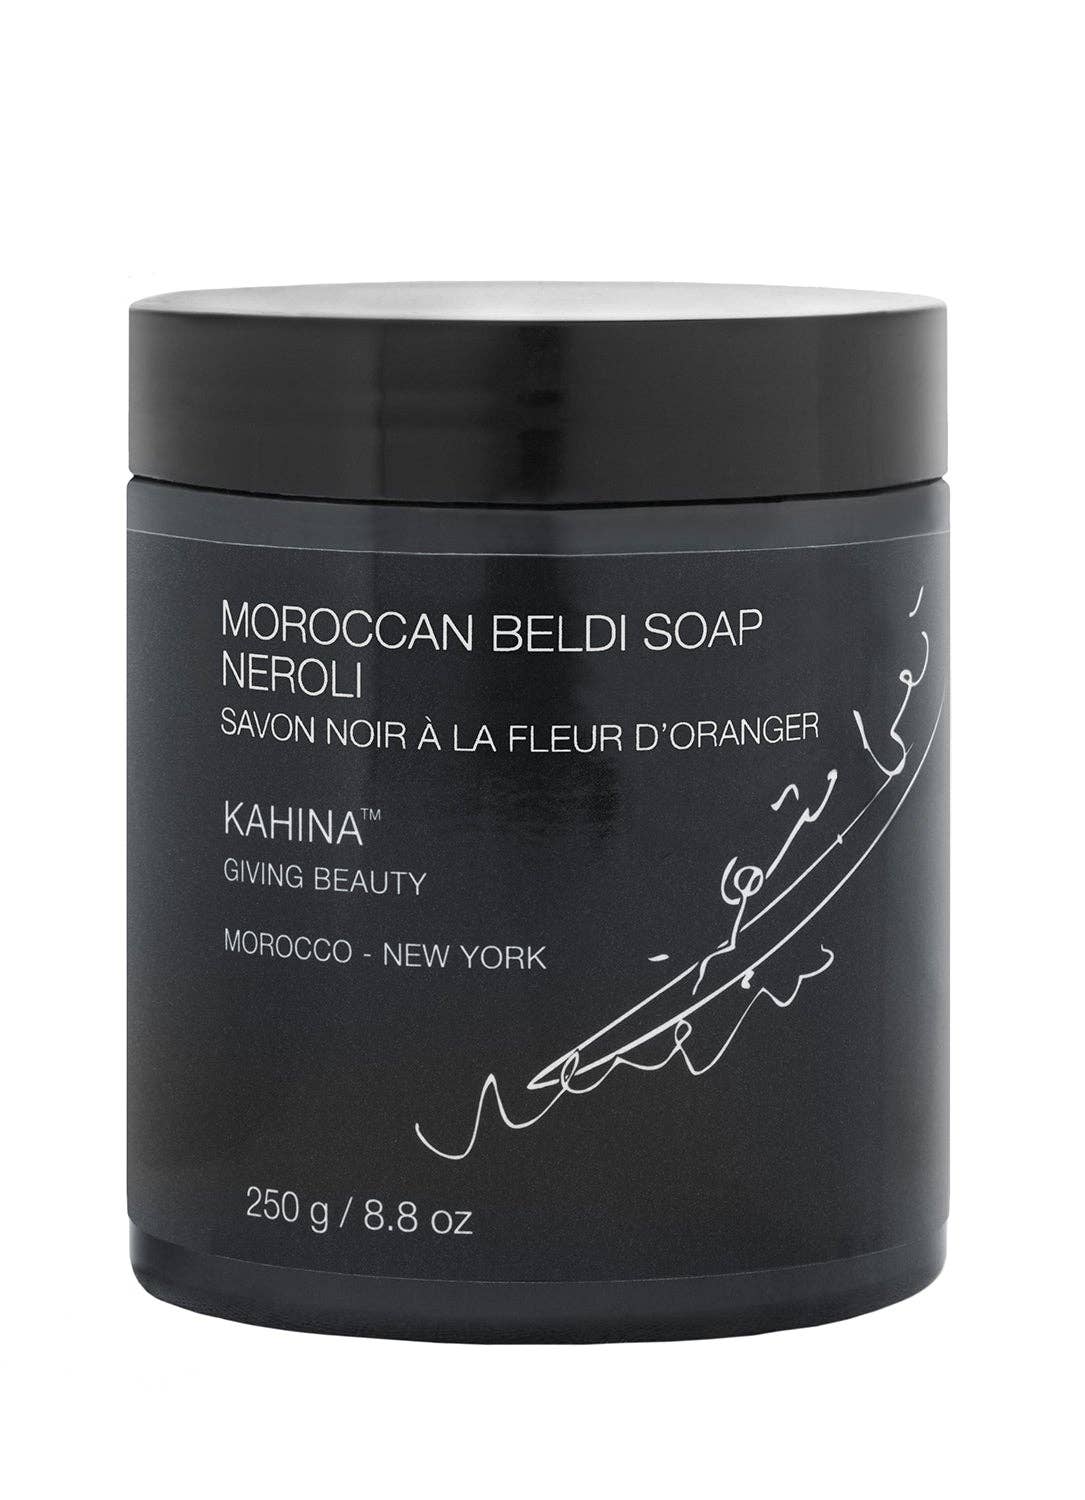 Moroccan Beldi Soap with Neroli